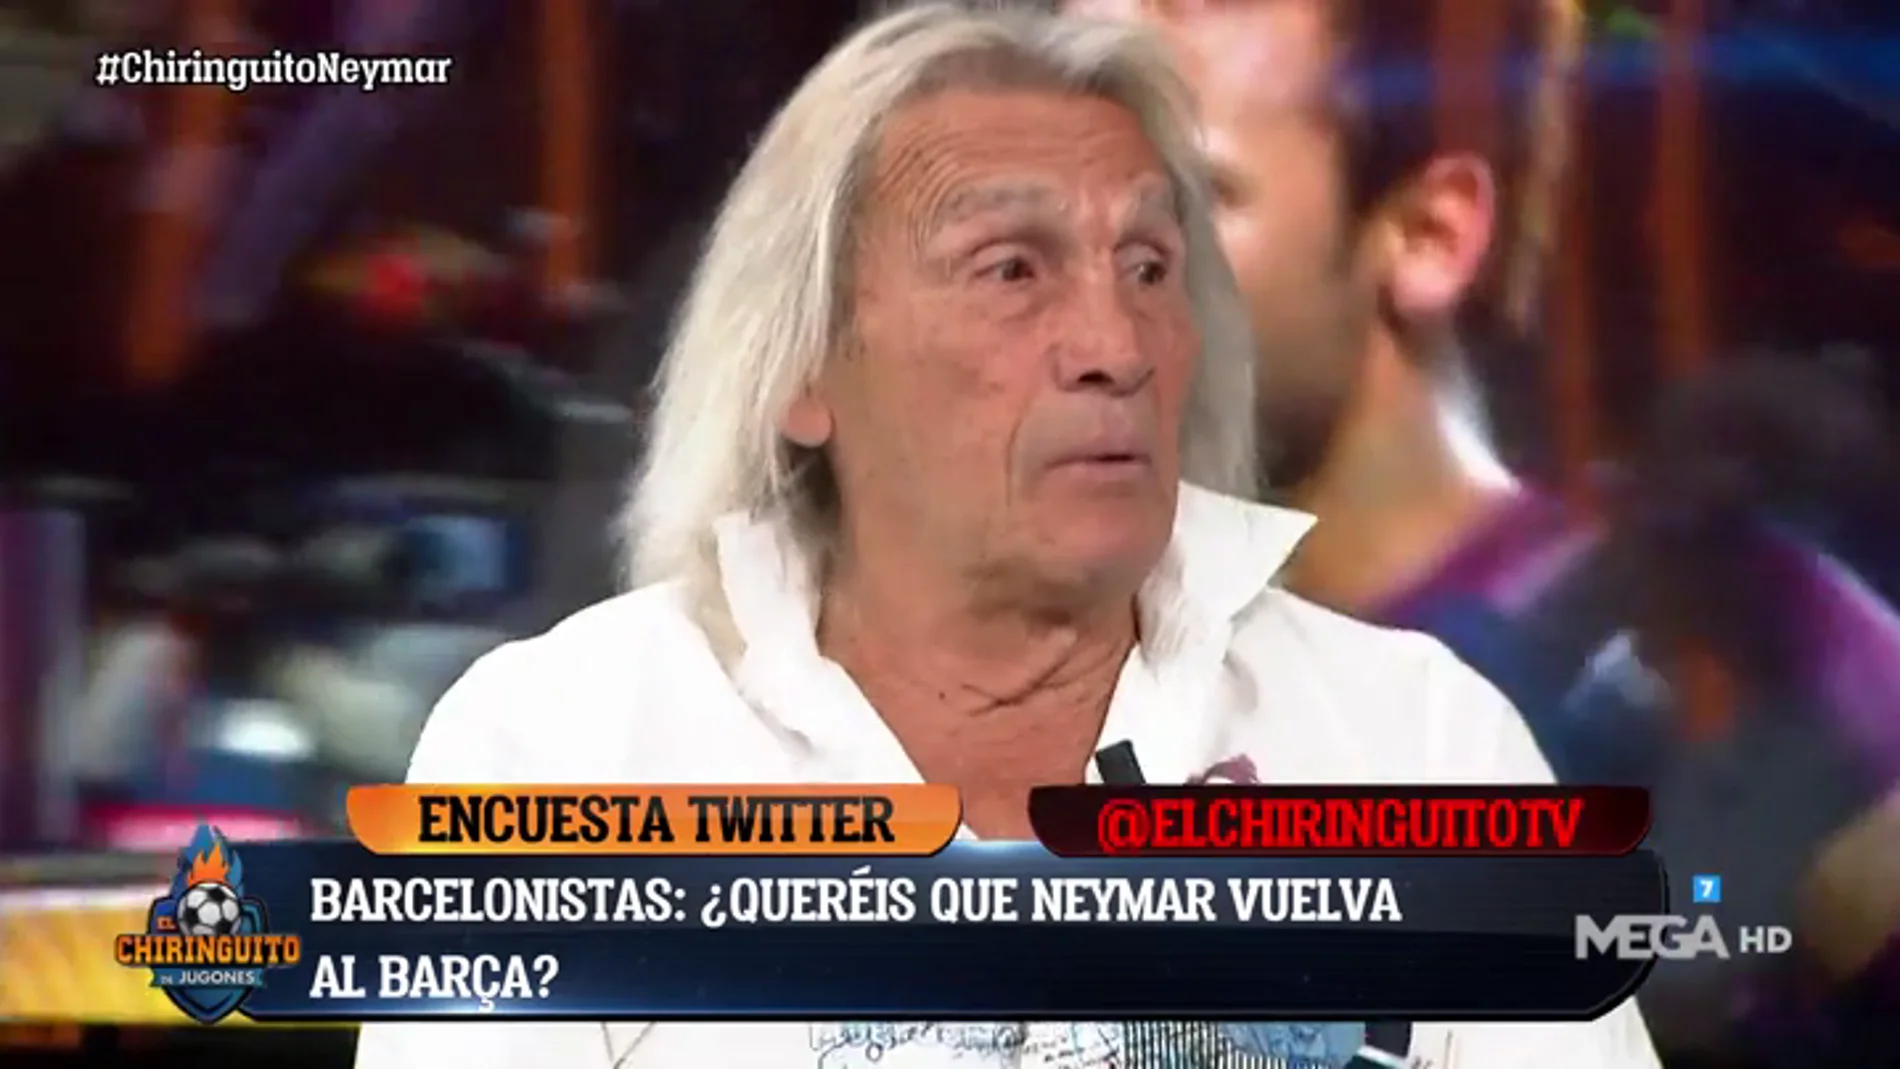 ¿Quiere el barcelonismo a Neymar? Los tertulianos se 'mojan' en El Chiringuito